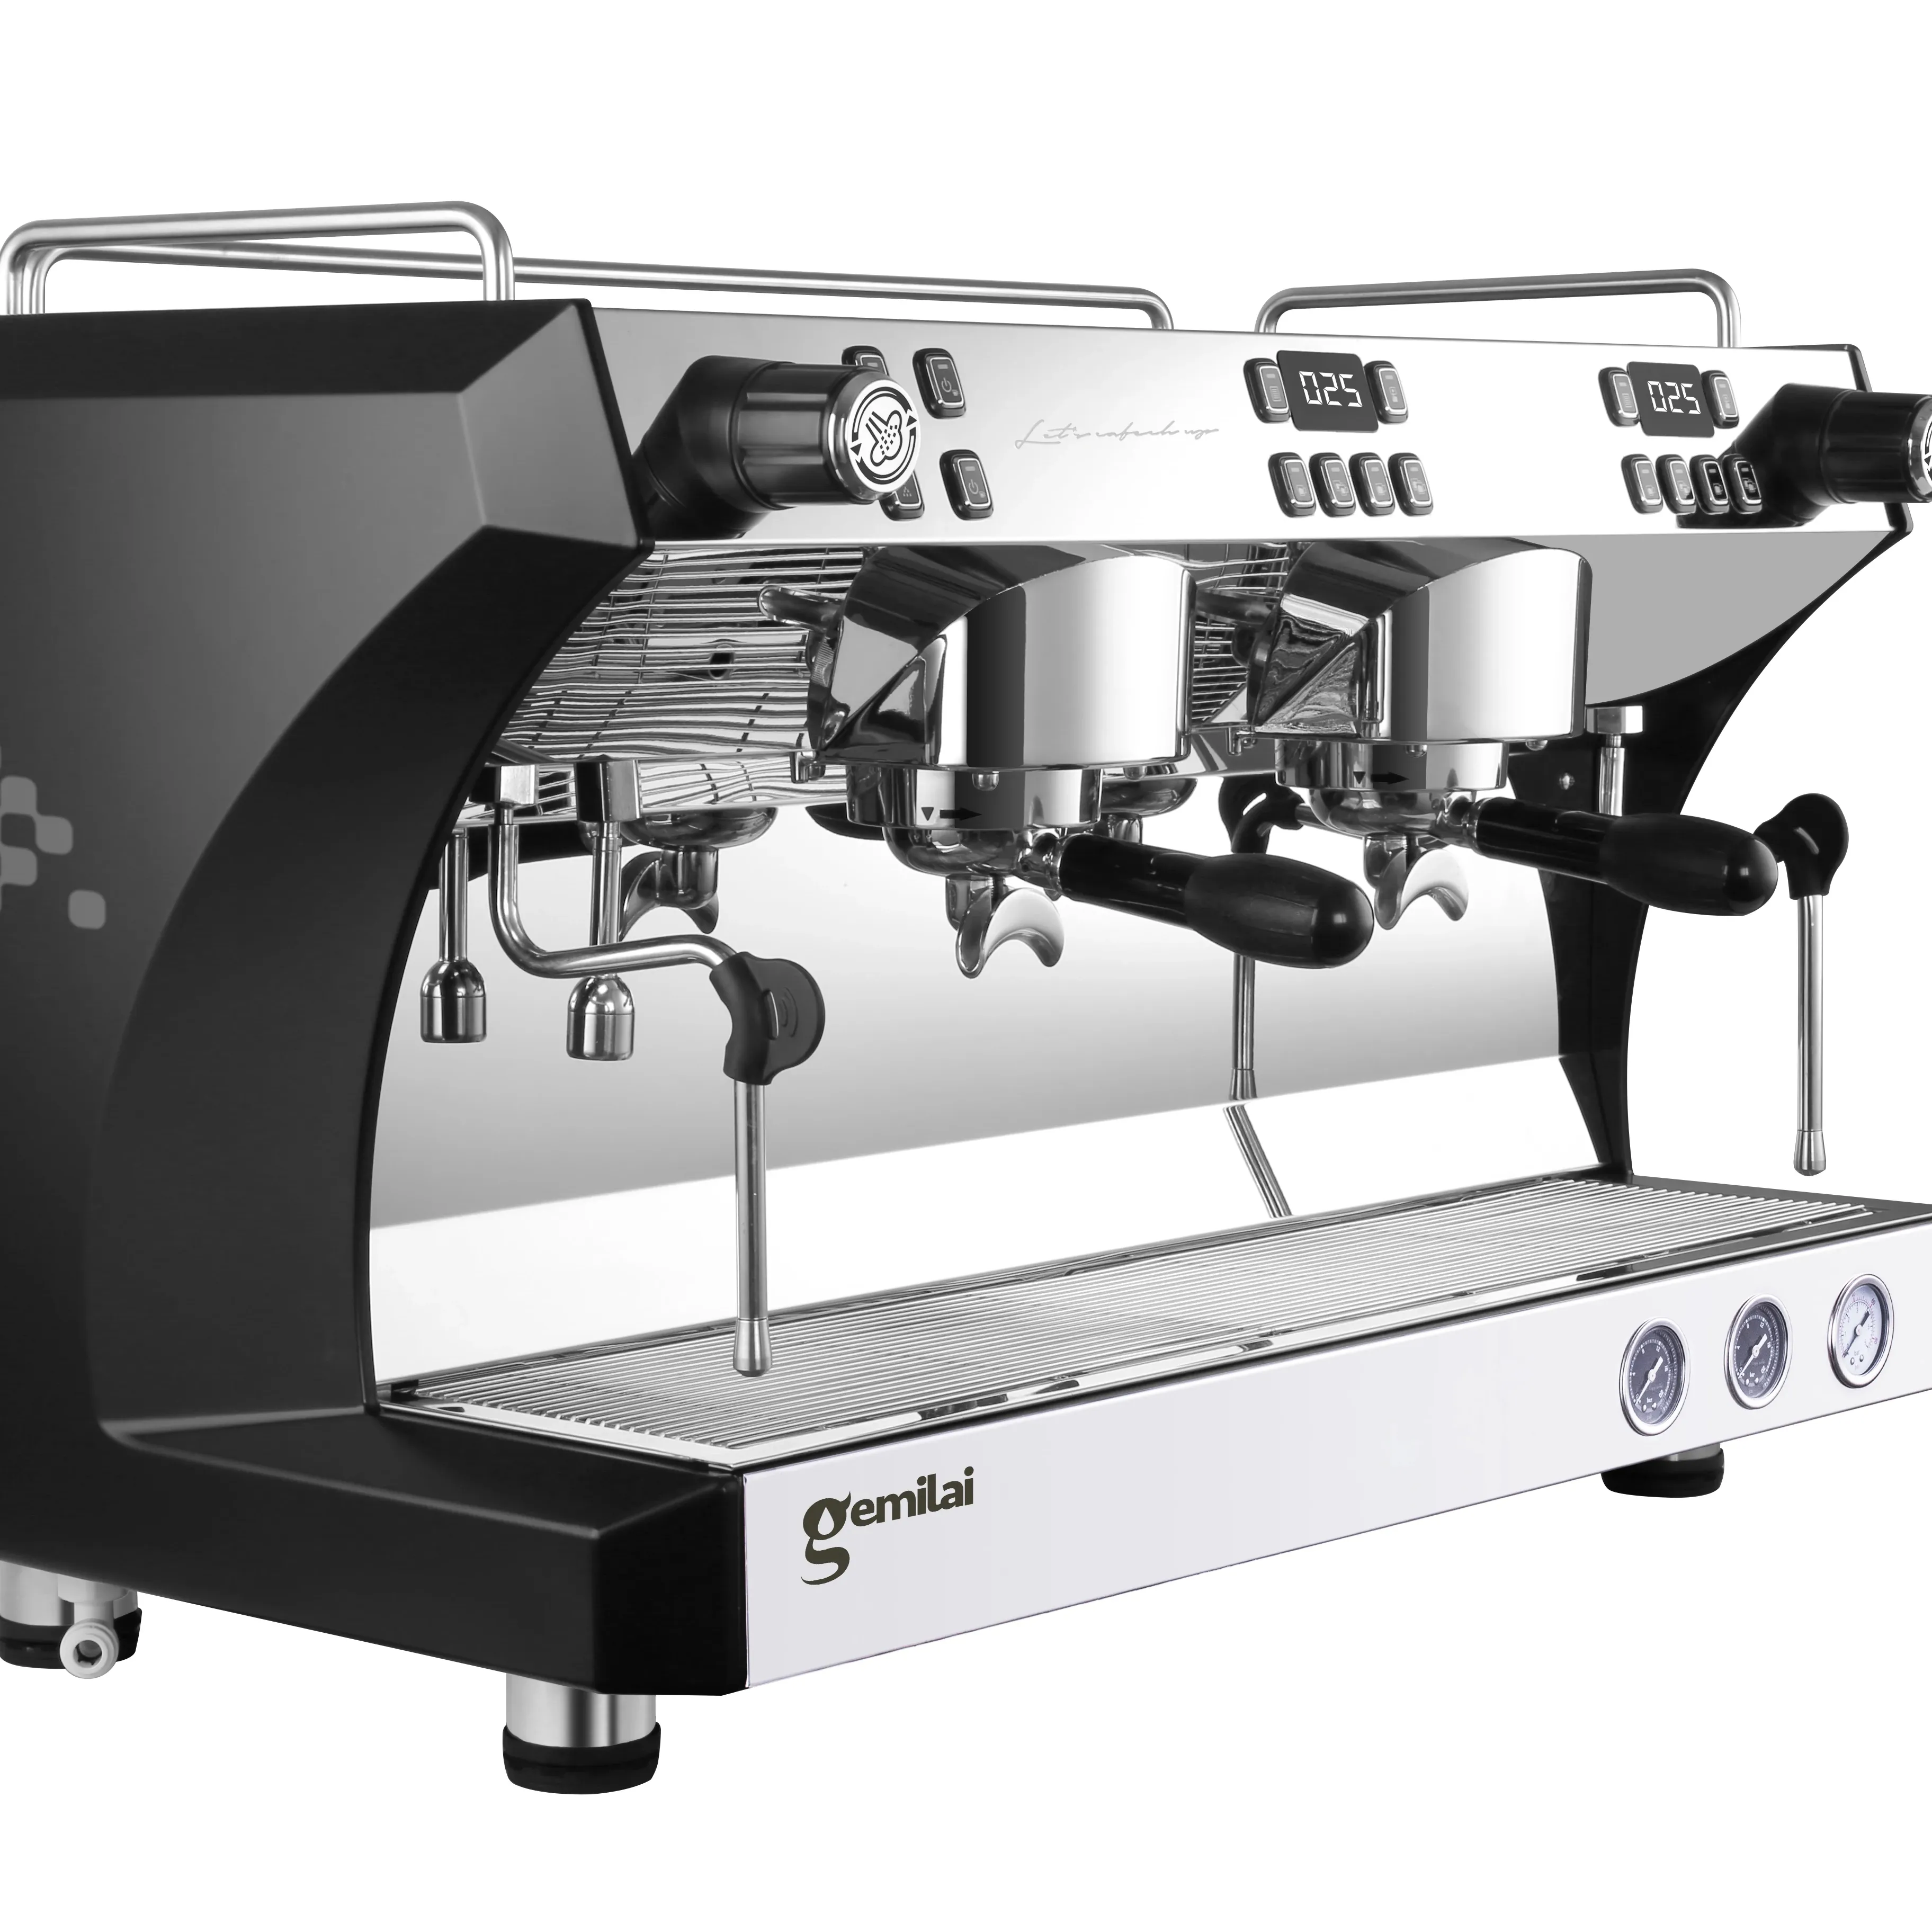 स्वचालित वाणिज्यिक कॉफी निर्माता इटैली कैप्पुचिनो बरिस्टा एस्प्रेसो कॉफी मशीन डोंगयी कैफे कॉफी मशीन